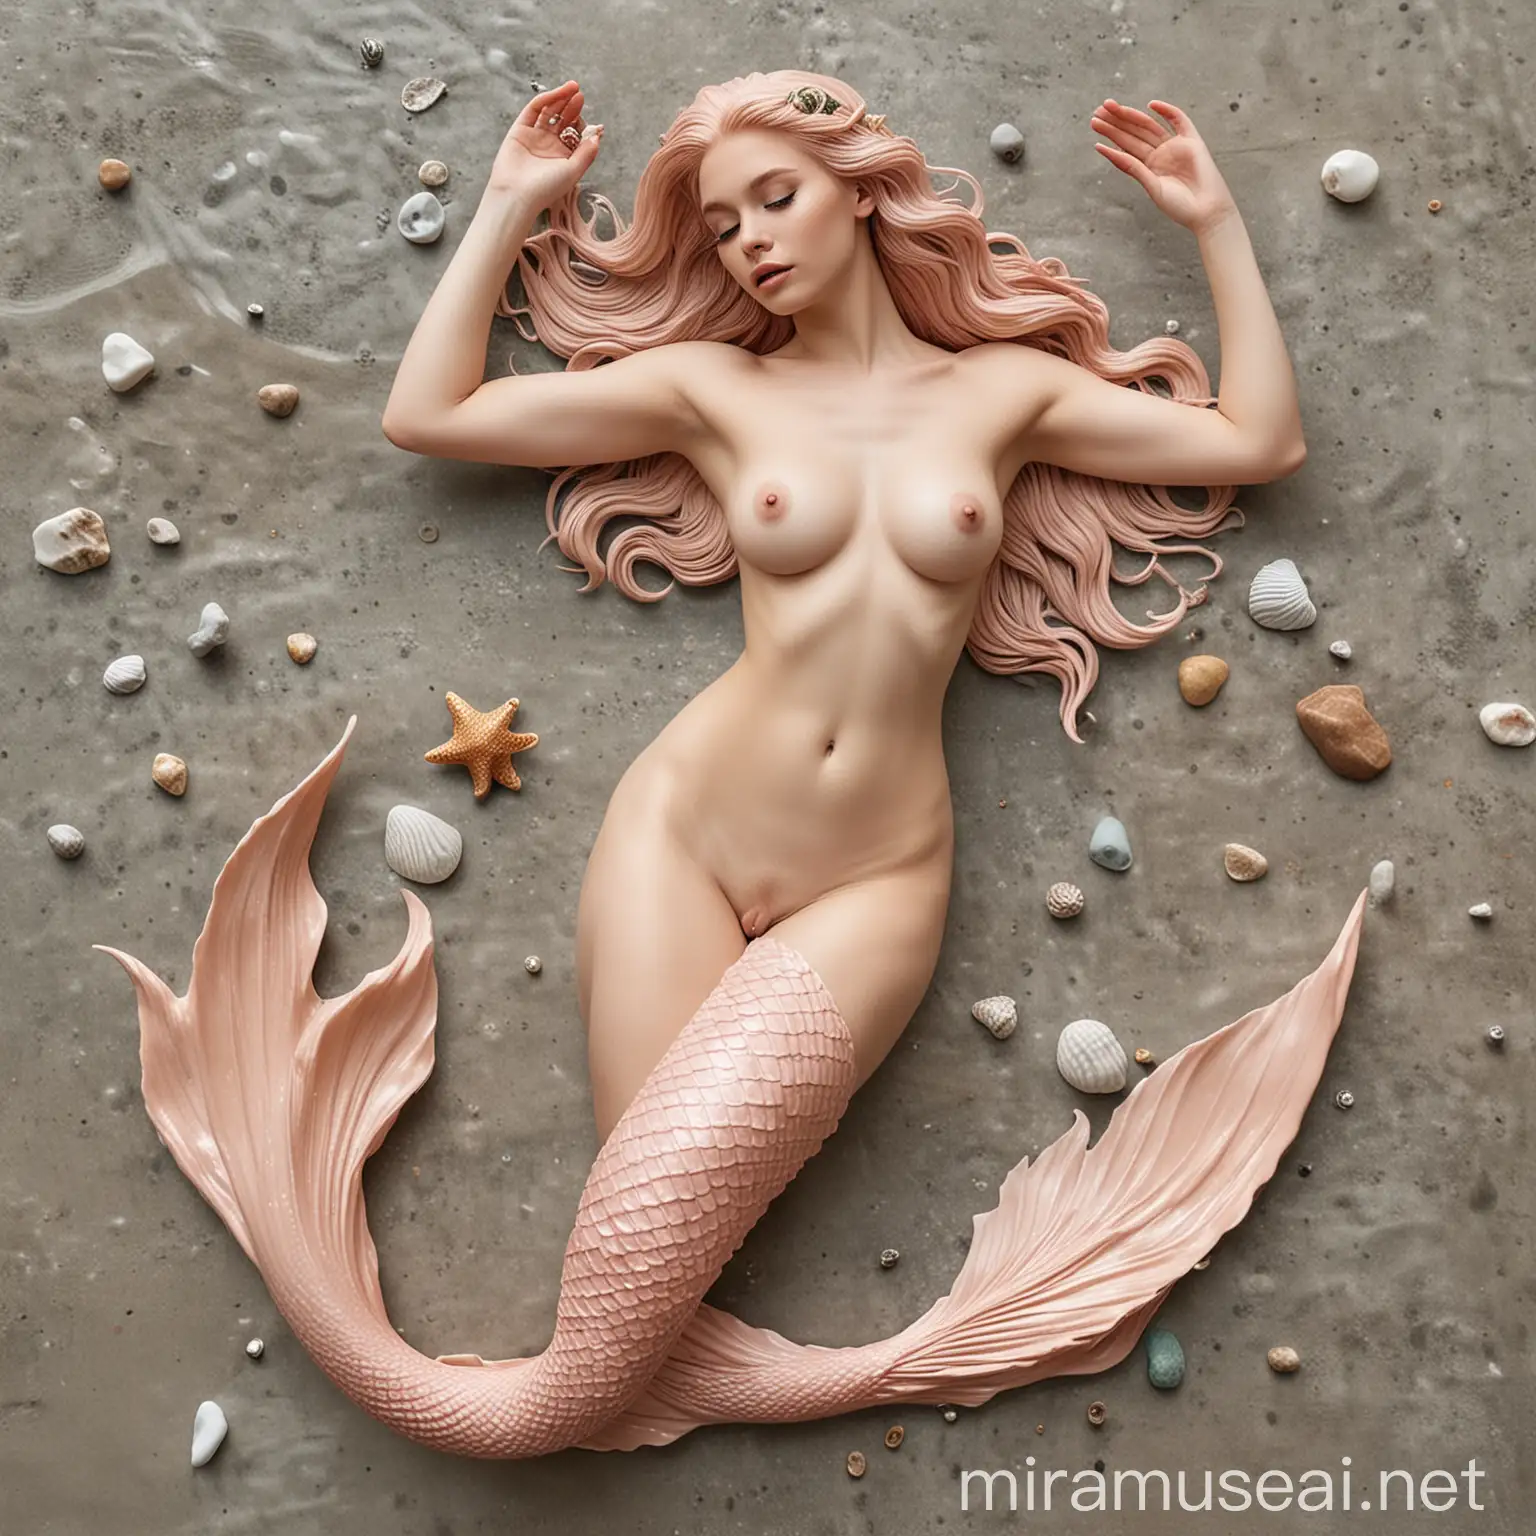 Enchanting Nude Mermaid Swimming in Moonlit Waters